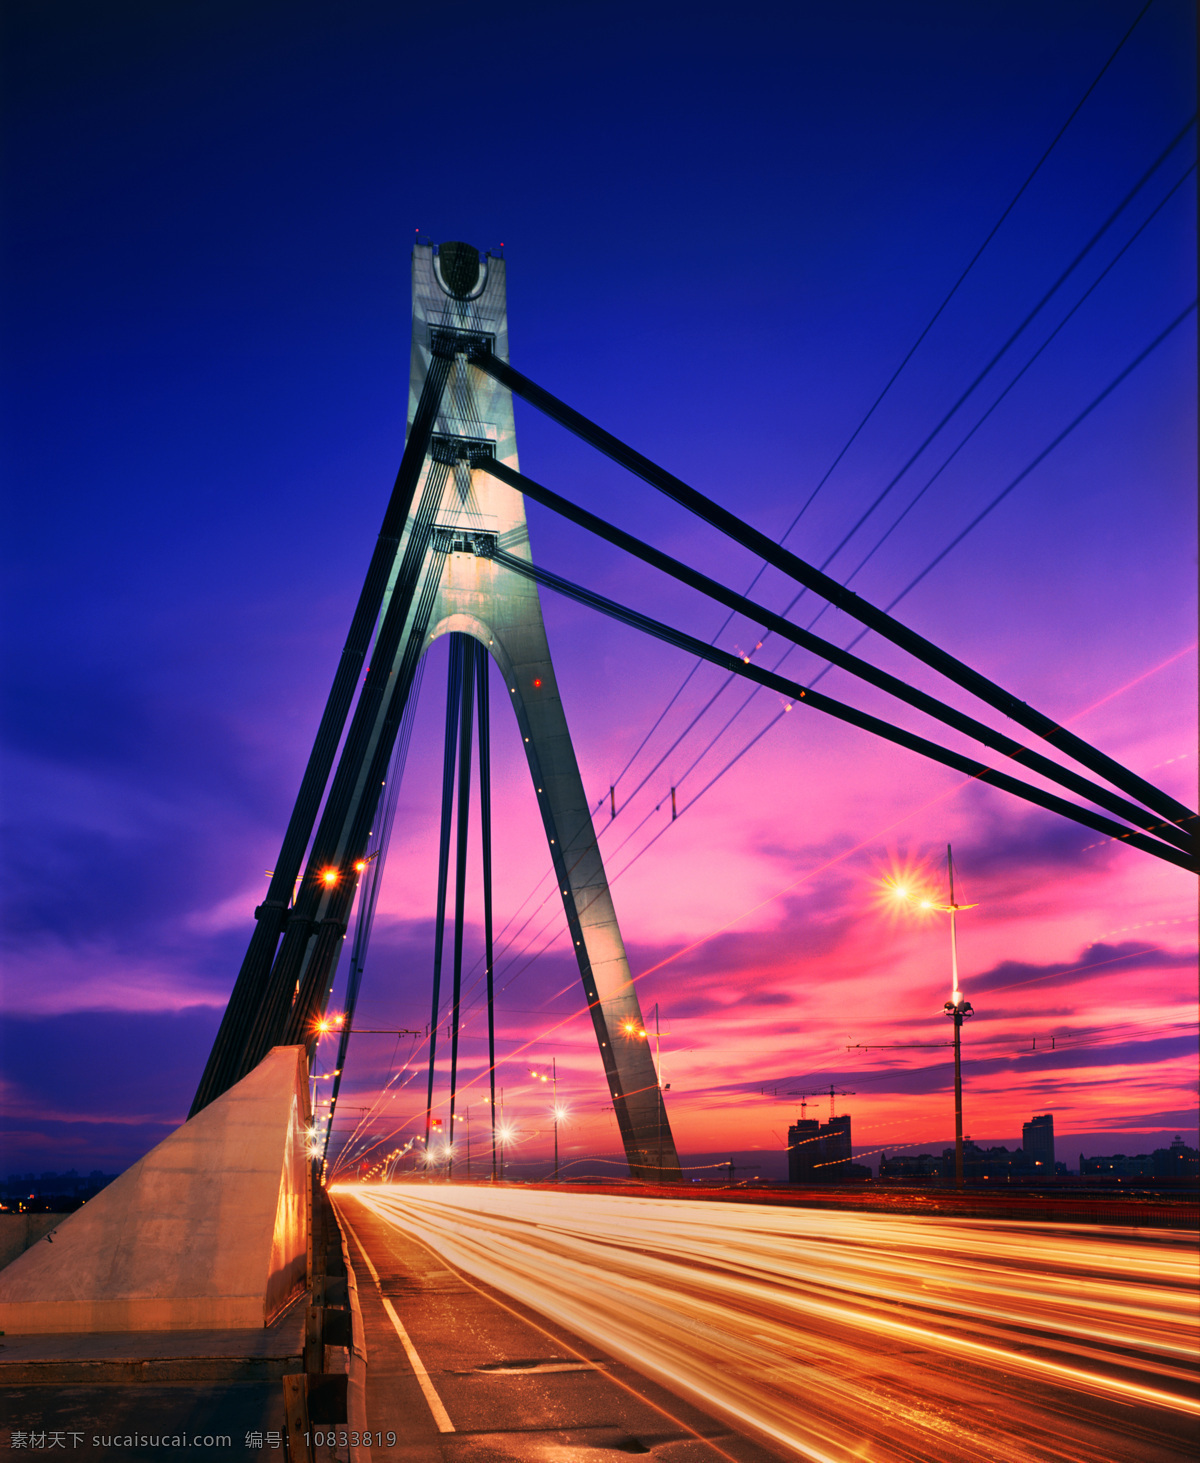 美丽 城市 桥梁 夜景 乌克兰风光 乌克兰首都 基辅 城市夜景 桥梁夜景 城市风景 城市风光 美丽风景 风景摄影 美丽景色 旅游景点 环境家居 蓝色